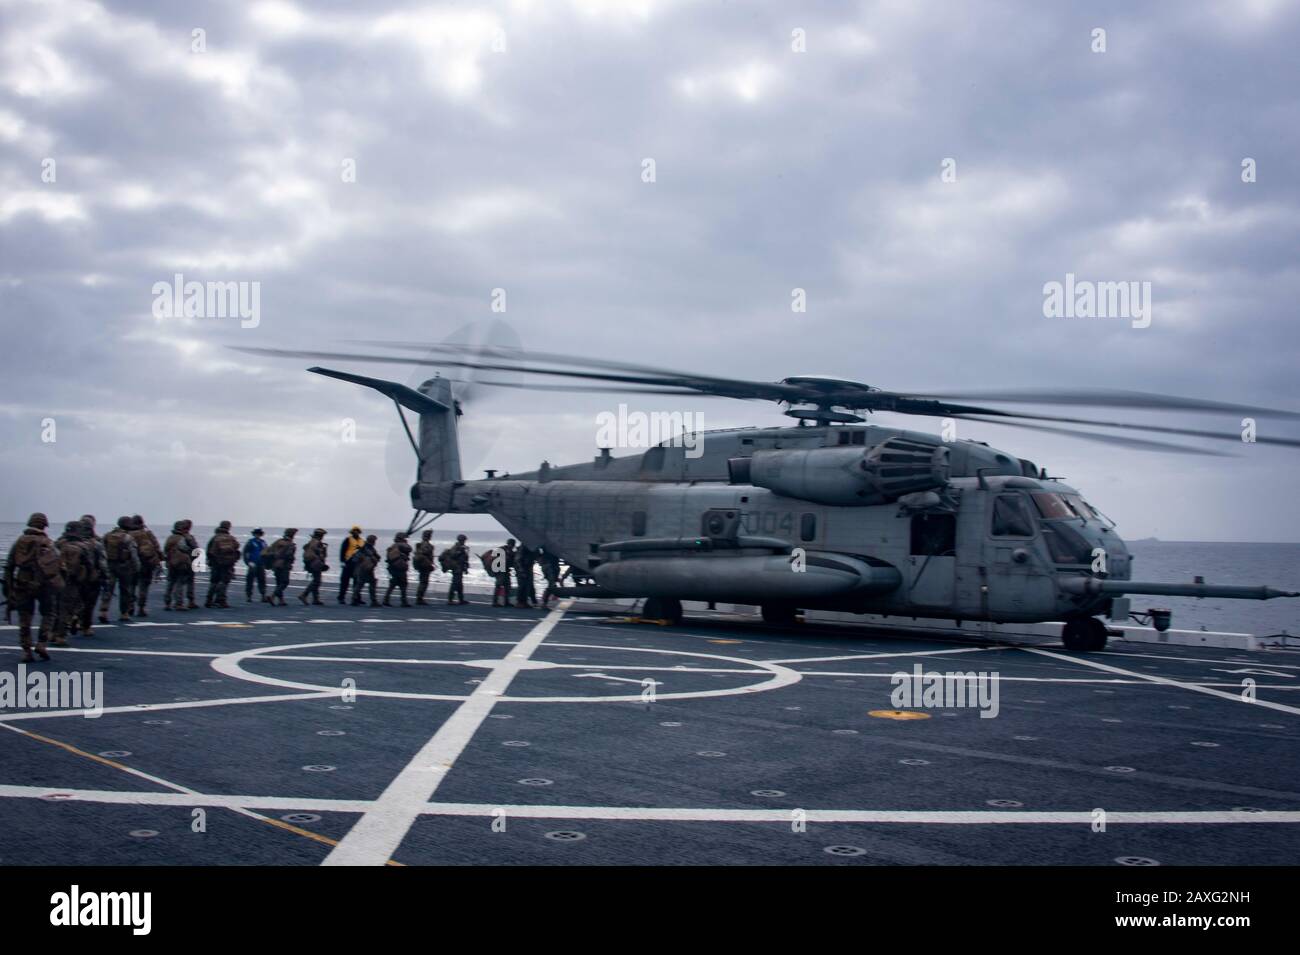 200209-N-NN369-1266 PAZIFISCHER OZEAN (FEB. 9, 2019) - US-Marines steigen einen Super Stallion Helikopter CH-53E vom "Warhorse" der Marine Heavy Helicopter Squadron (HMH) 465 auf das Flugdeck des amphibischen Transport-Dockschiffs USS Portland (LPD 27), um einen Luftangriff auf San Clemente Island, Kalifornien, während Der Übung Iron Fist 2020 zu simulieren. Iron Fist ist eine jährliche Übung zur Verbesserung der Fähigkeit der US-amerikanischen und japanischen Streitkräfte, kombinierte amphibische Operationen zu planen, zu kommunizieren und durchzuführen. (USA Navy-Foto von Mass Communication Specialist 2. Klasse Jessica Paulauskas) Stockfoto